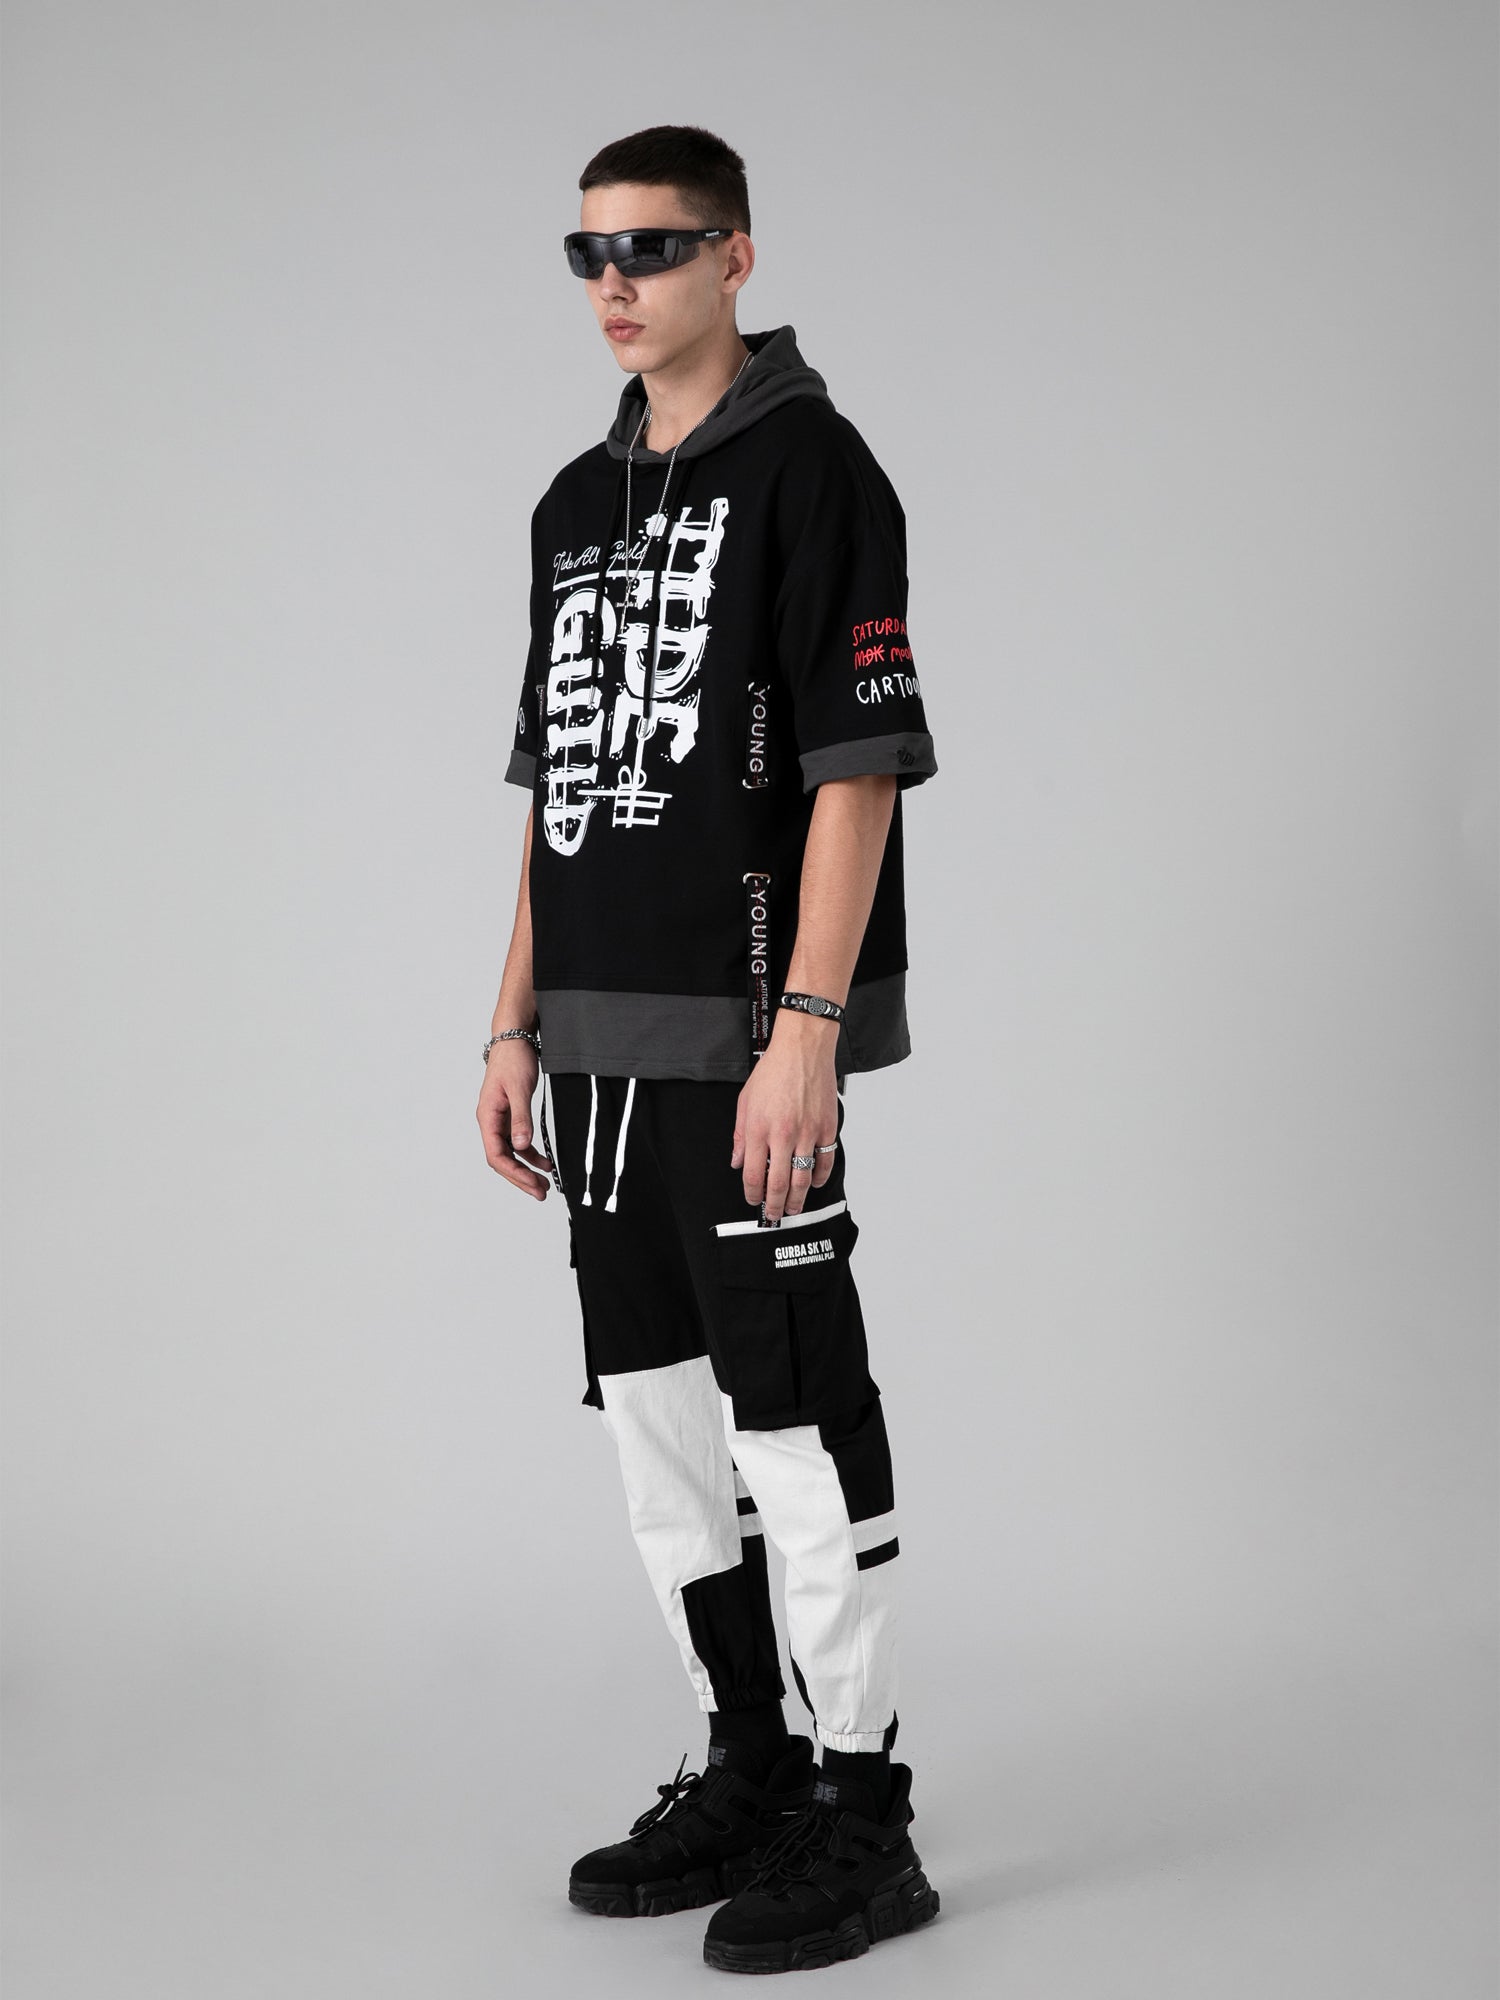 JUSTNOTAG Hip-Hop-Kapuzenpullover mit kurzen Ärmeln der trendigen Marke männlicher Persönlichkeits-Streamer, farblich passender gefälschter Zweiteiler